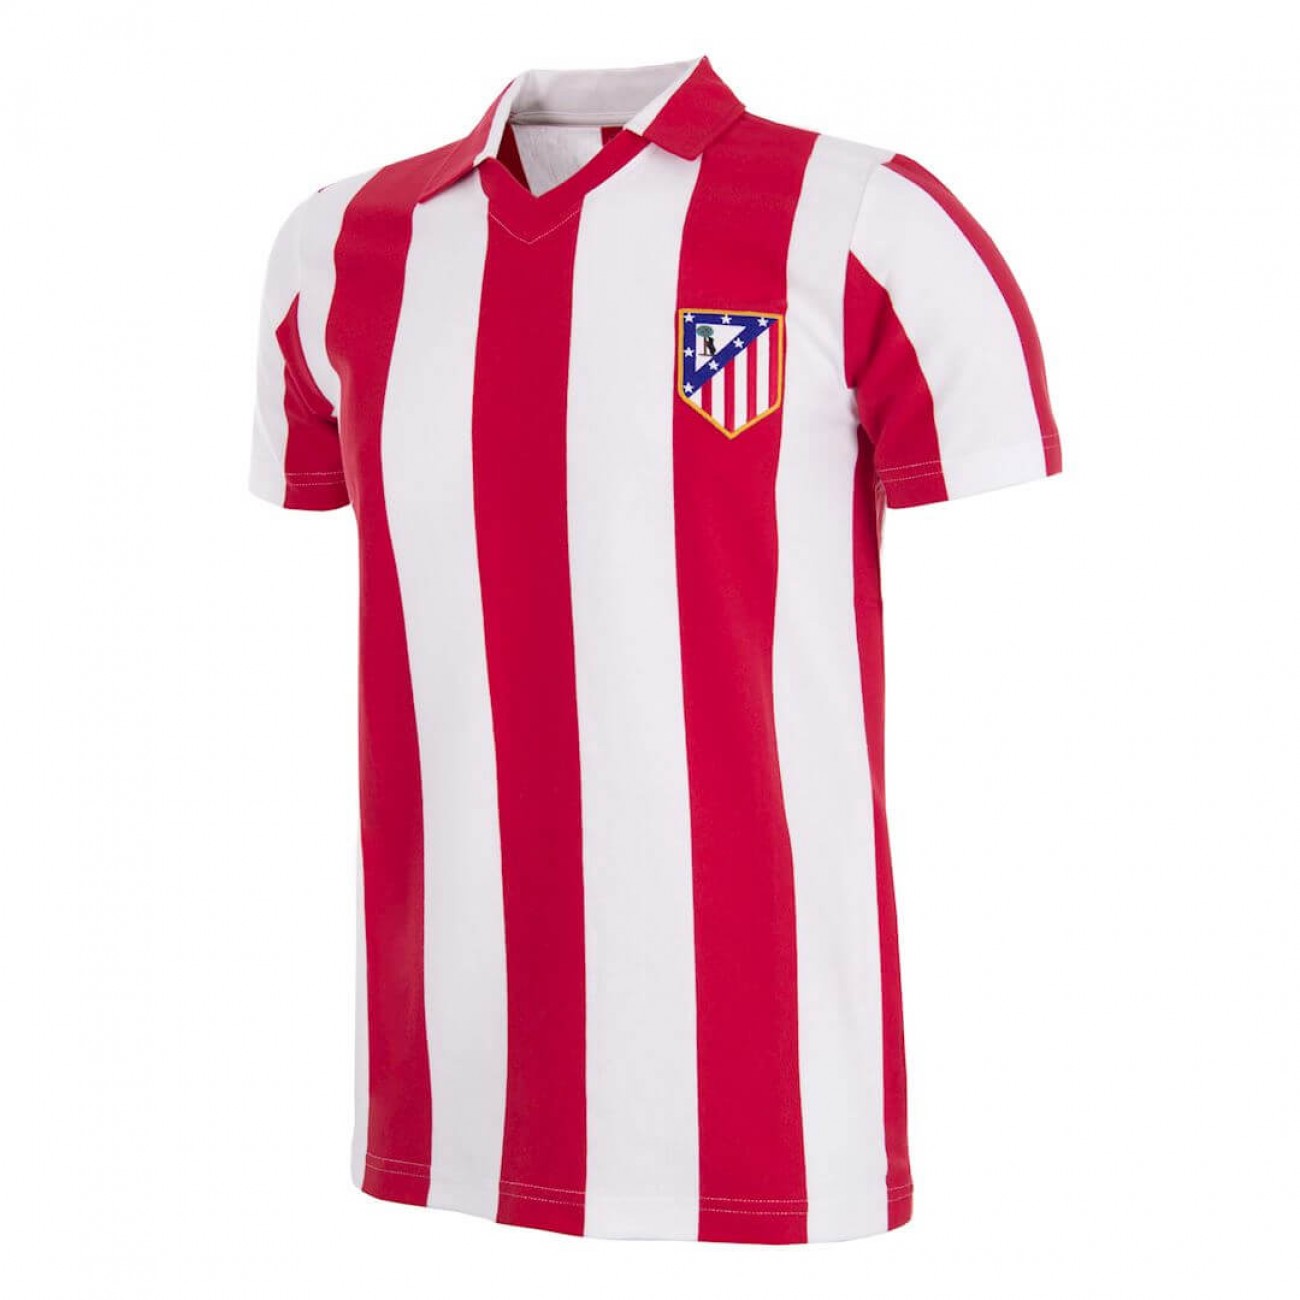 Camiseta Atlético de Madrid de los años 80 Retrofootball®